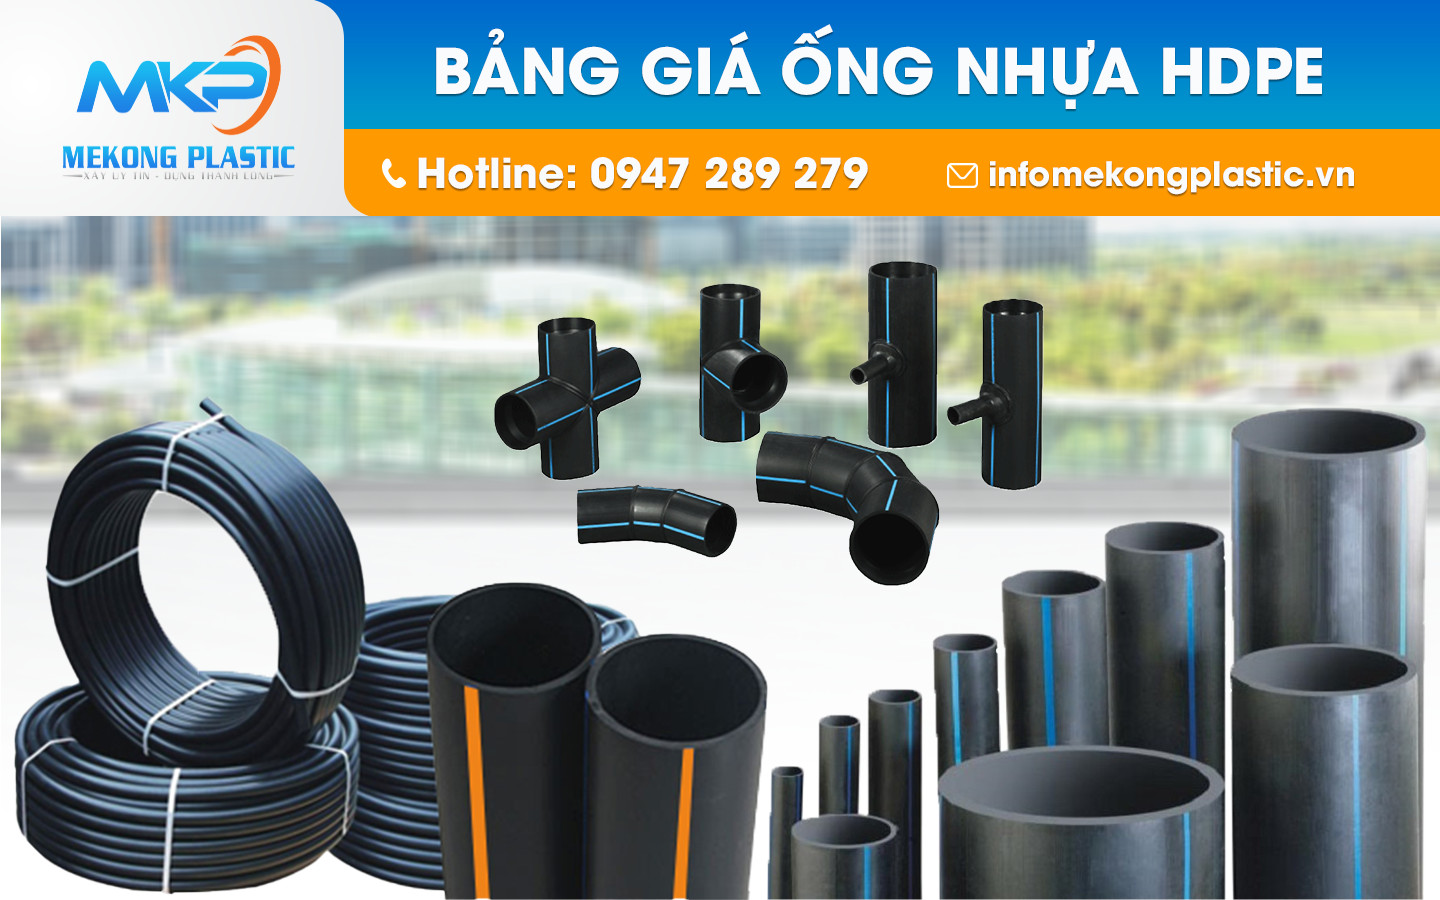 Cùng Mekong Platsic tìm hiểu mẹo chọn mua ống nhựa HDPE và phụ kiện HDPE